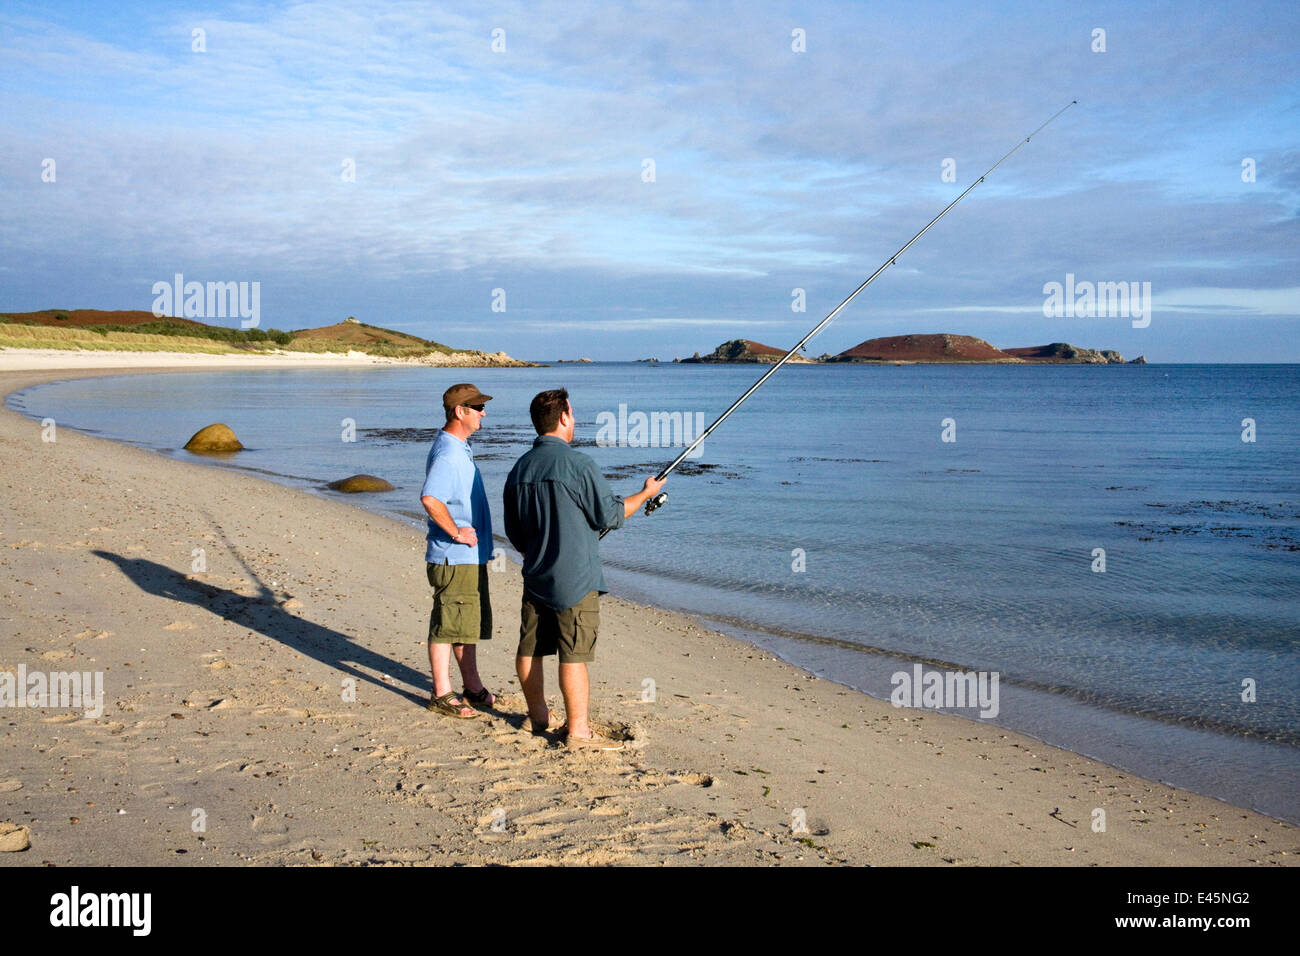 Deux hommes la pêche sur la plage nominale, Saint Martin's, Îles Scilly, UK, septembre. Parution du modèle. Banque D'Images